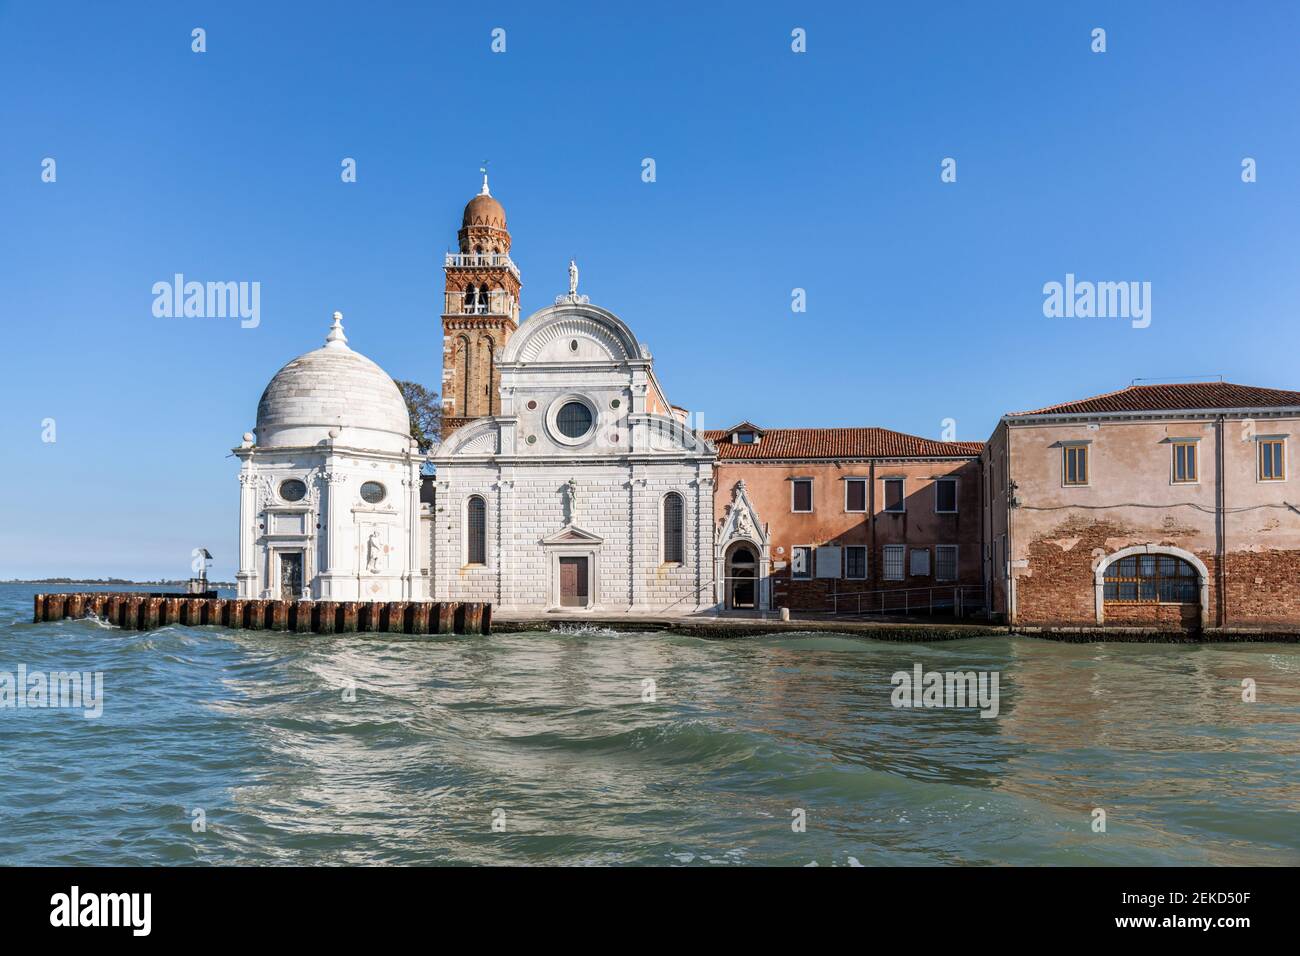 La Chiesa di San Michele sur Isola di San Michele était l'un des premiers bâtiments de la Renaissance à Venise. Il abrite maintenant le cimetière principal. Venise, Italie Banque D'Images